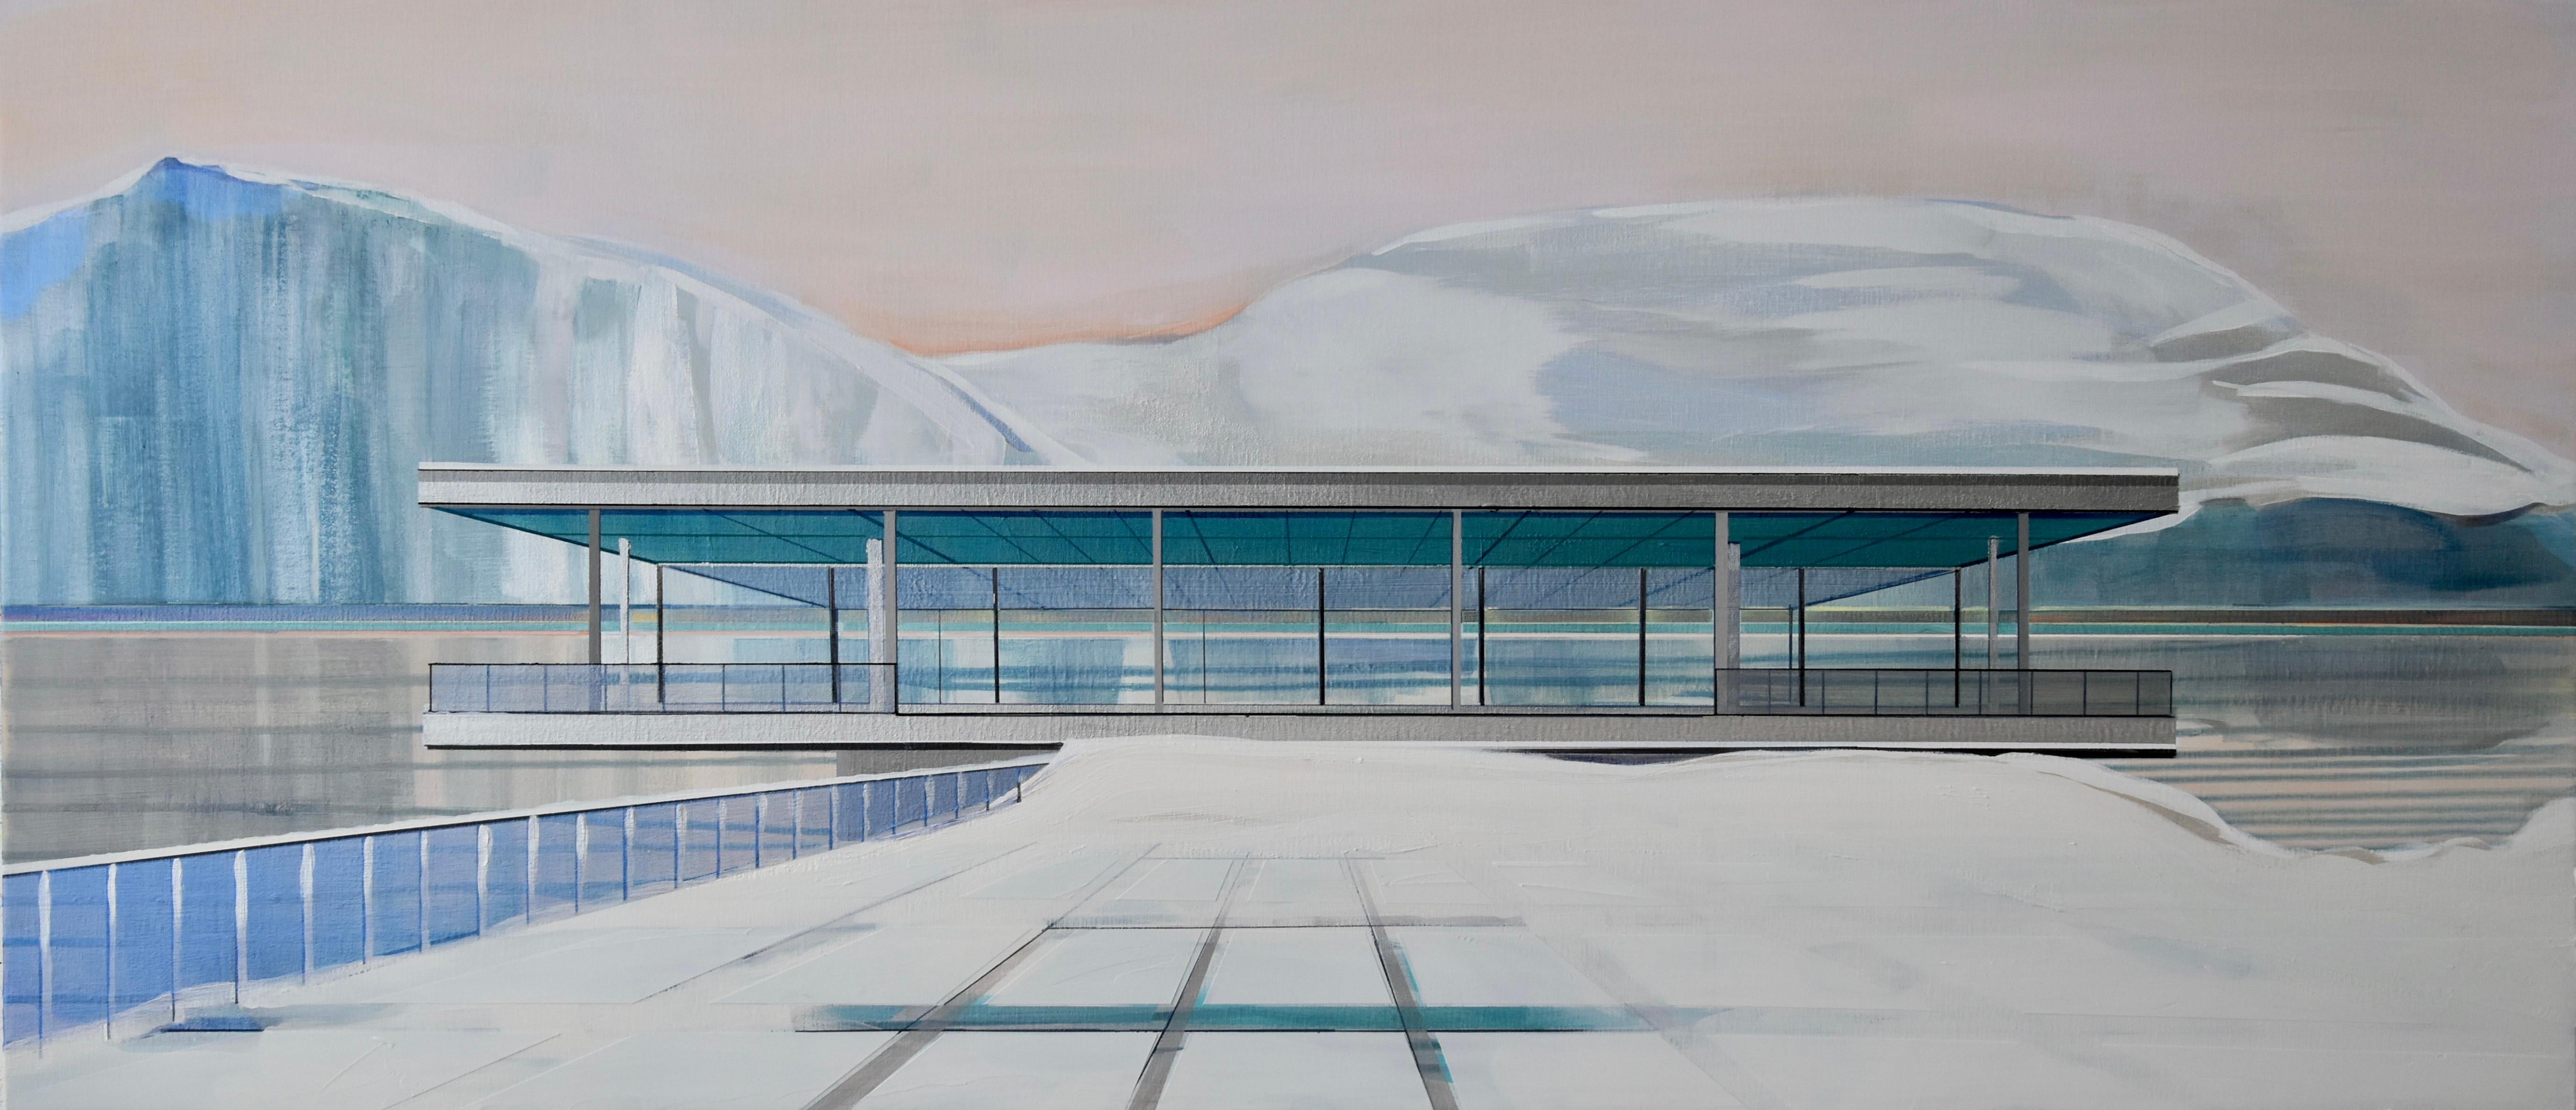 CÉCILE VAN HANJA Landscape Painting - Arctic Modernism